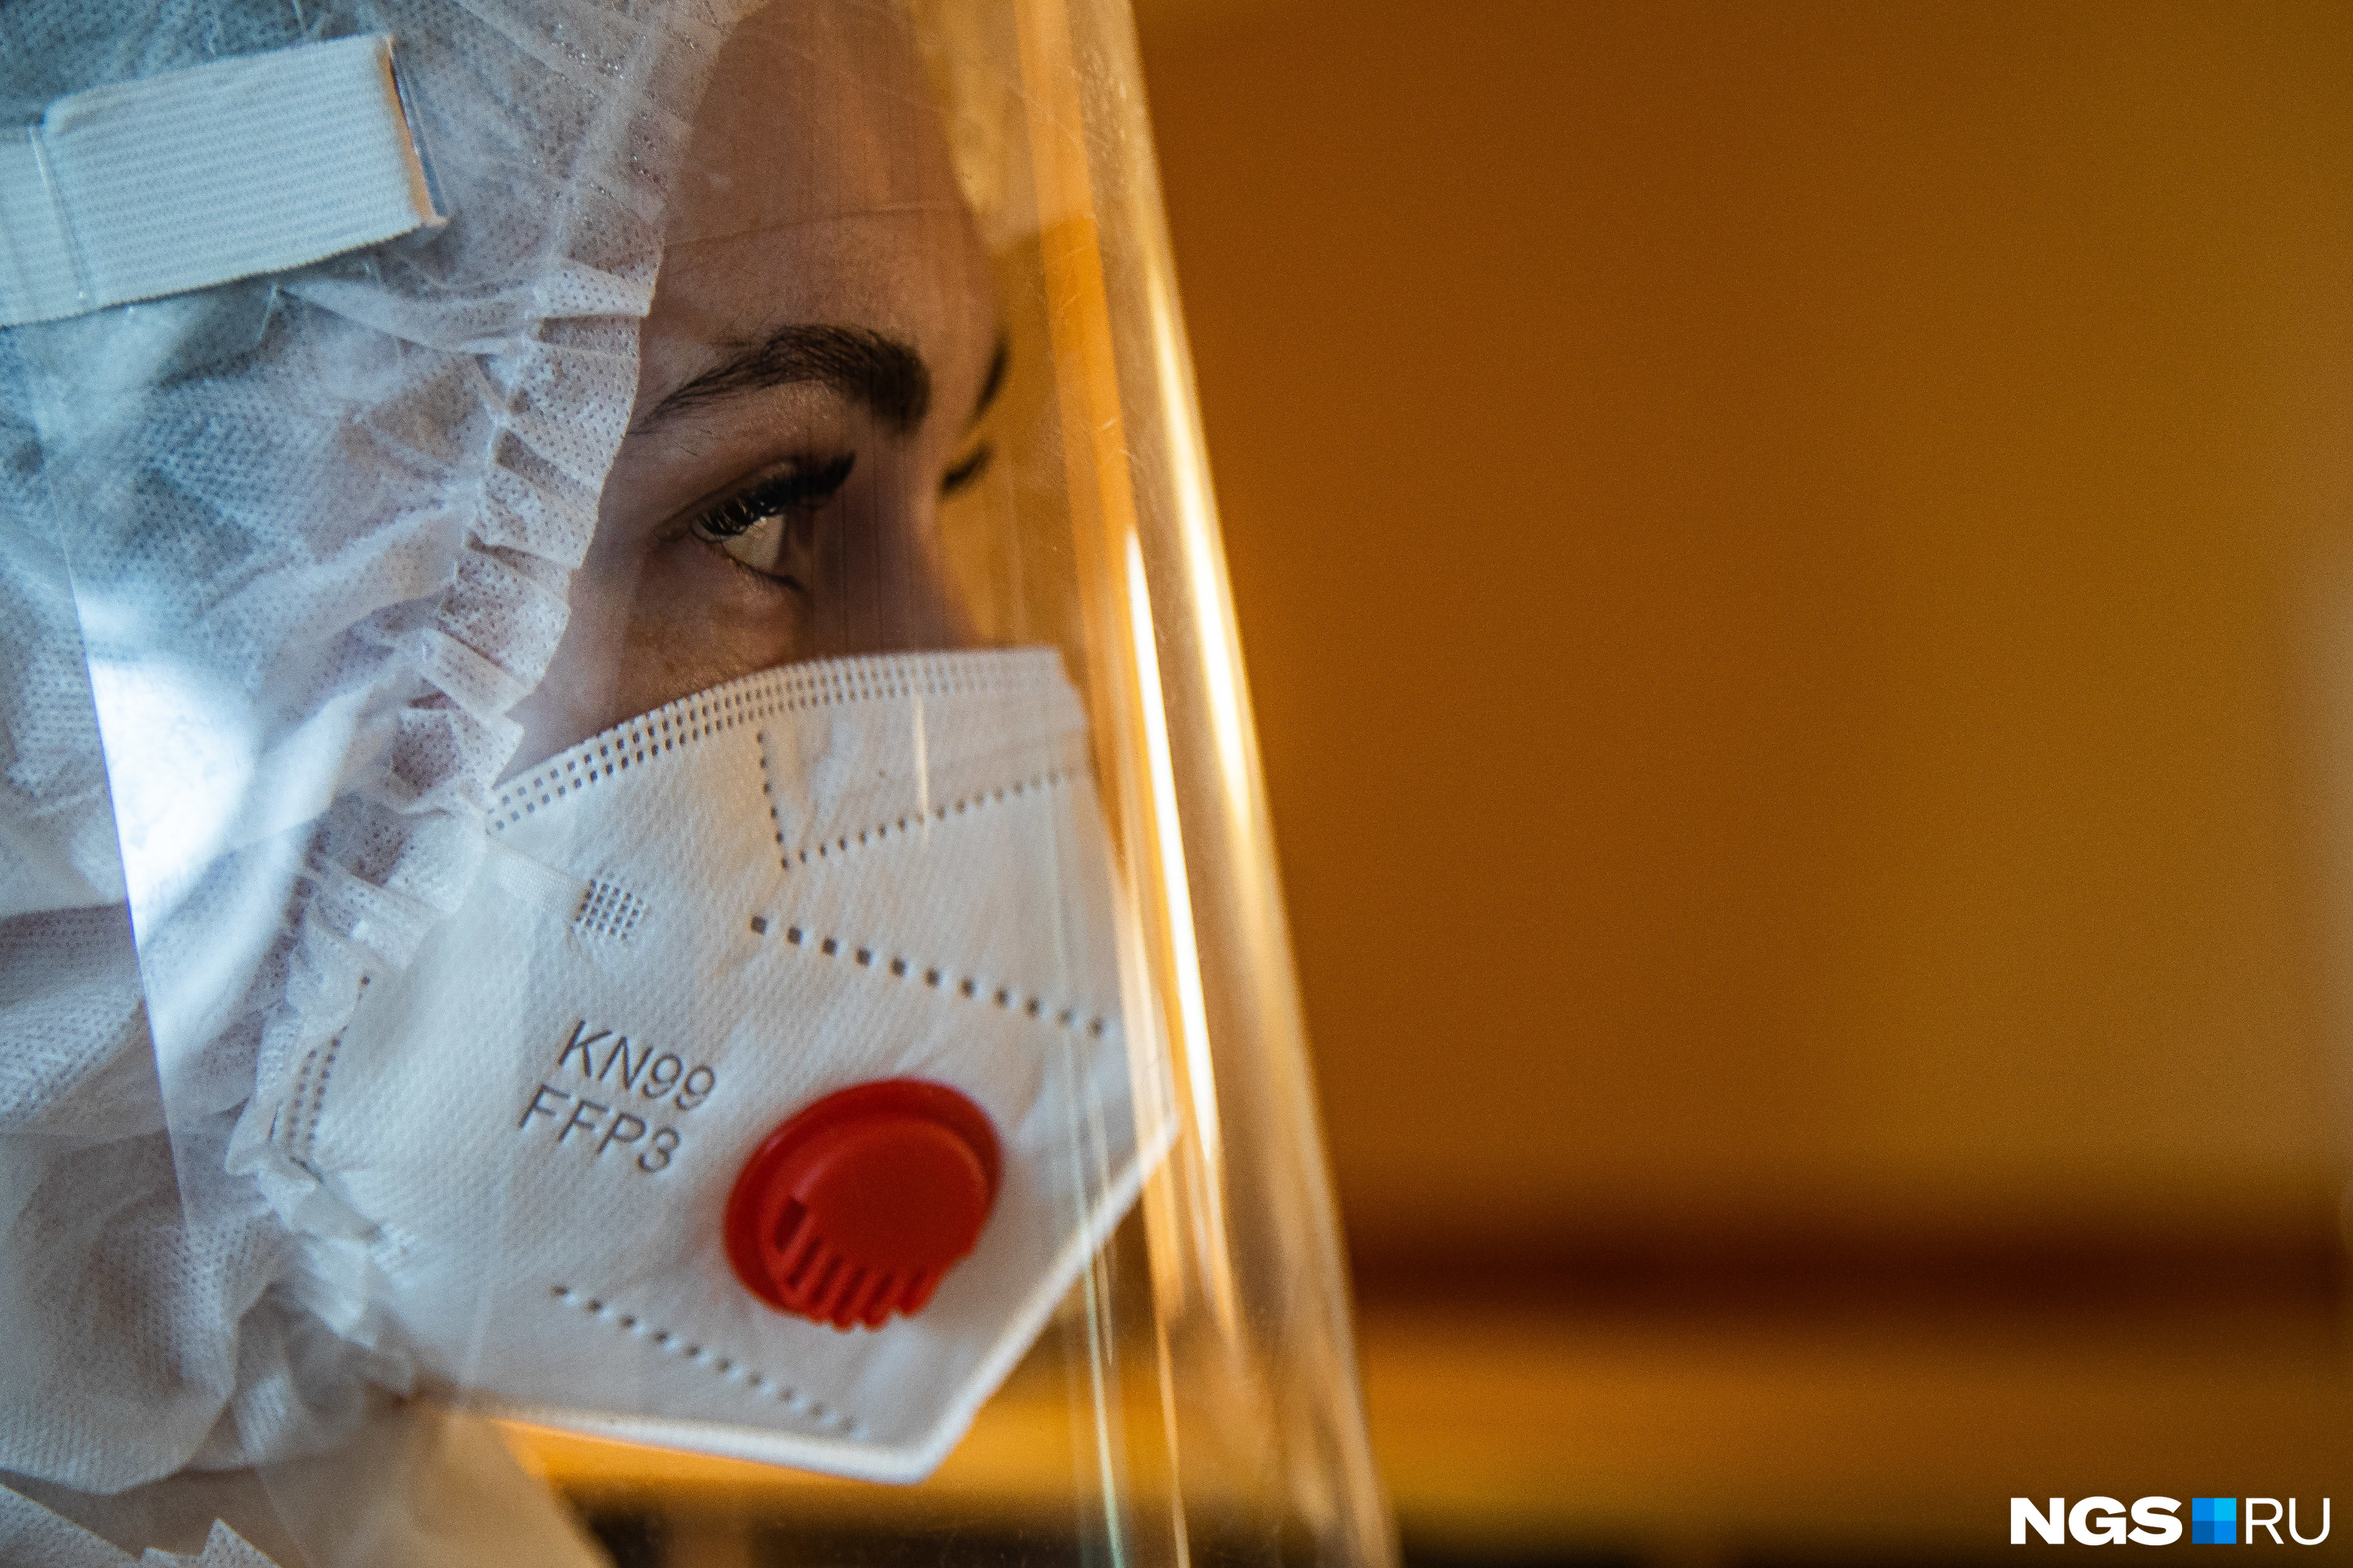 Вакцинированные люди тоже болеют, им нужно носить маски, чтобы снизить дозу вирусной нагрузки от инфицированных людей, считает Сергей Нетёсов